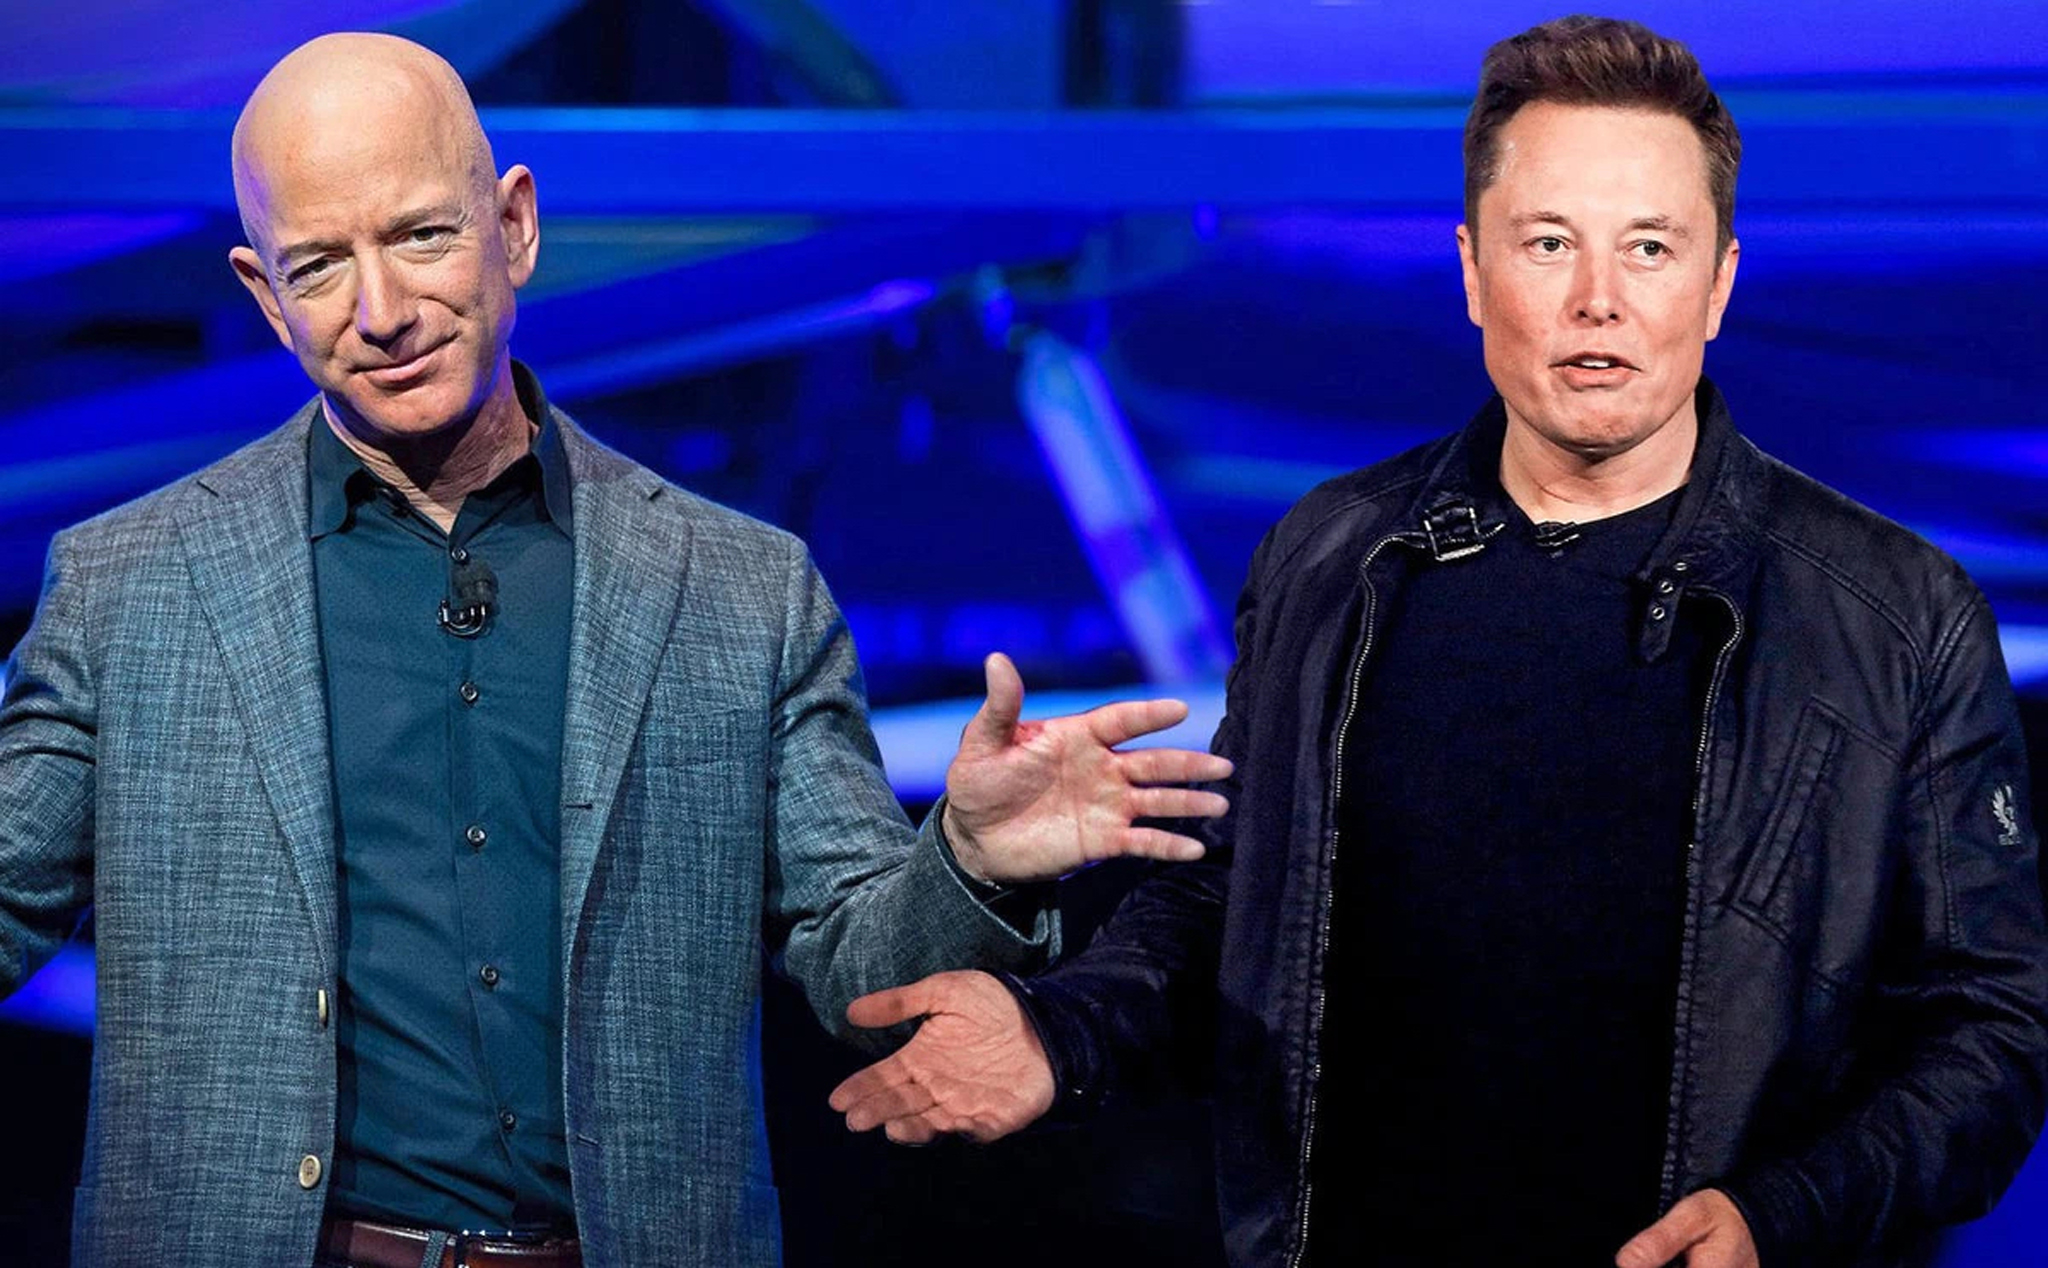 Elon Musk "cà khịa" Jeff Bezos khi bỏ xa người đồng nghiệp trên bảng xếp hạng tài sản